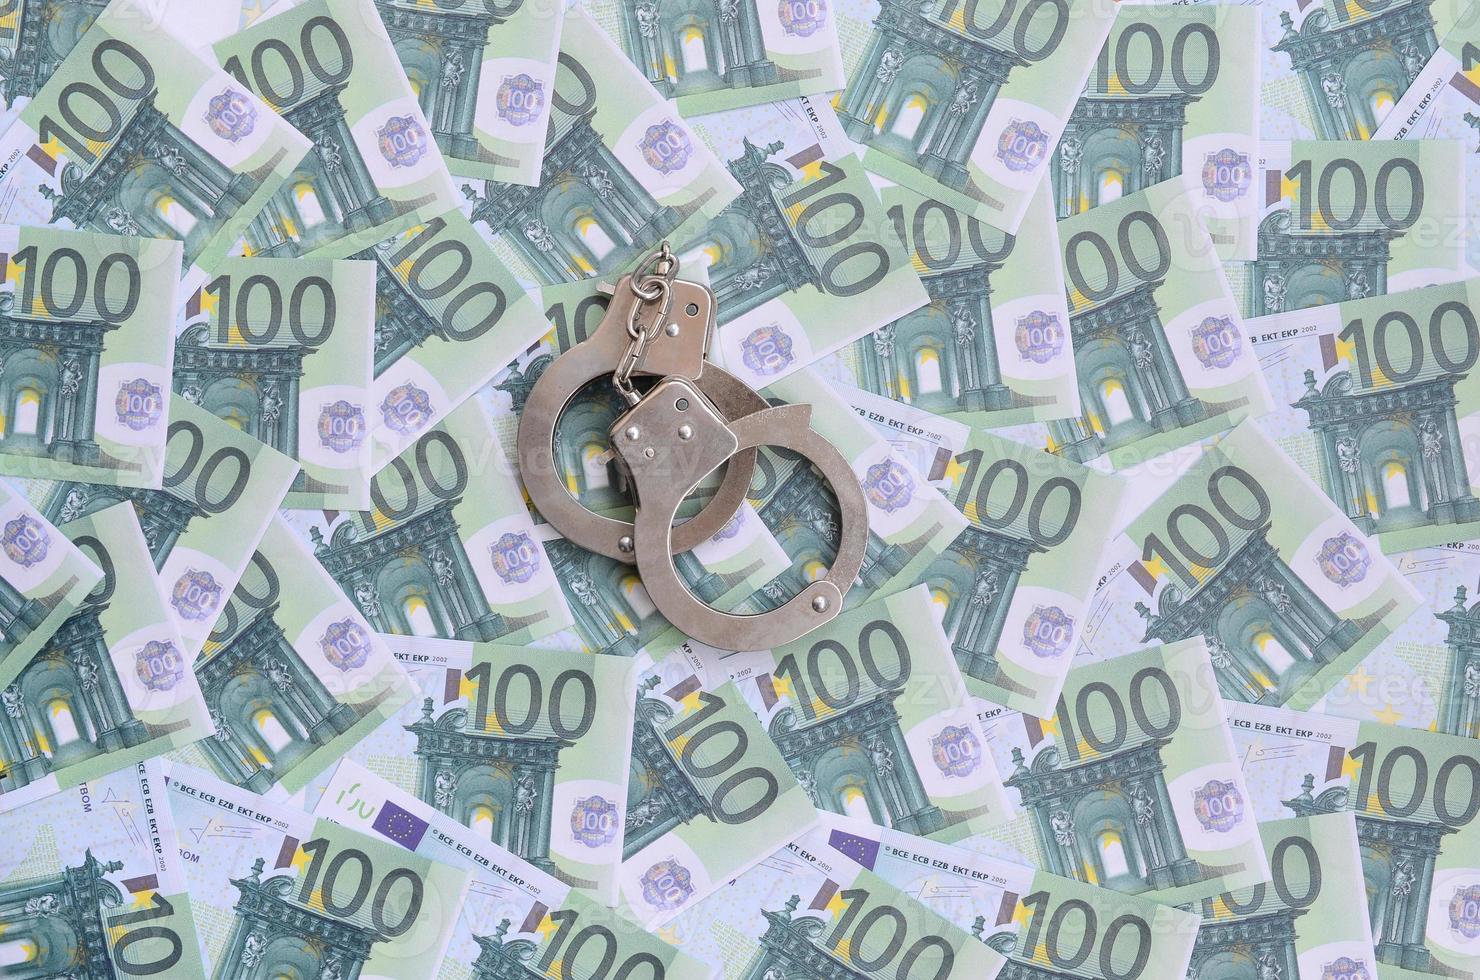 Politie handboeien leugens Aan een reeks van groen monetair denominaties van 100 euro. een veel van geld vormen een eindeloos hoop foto